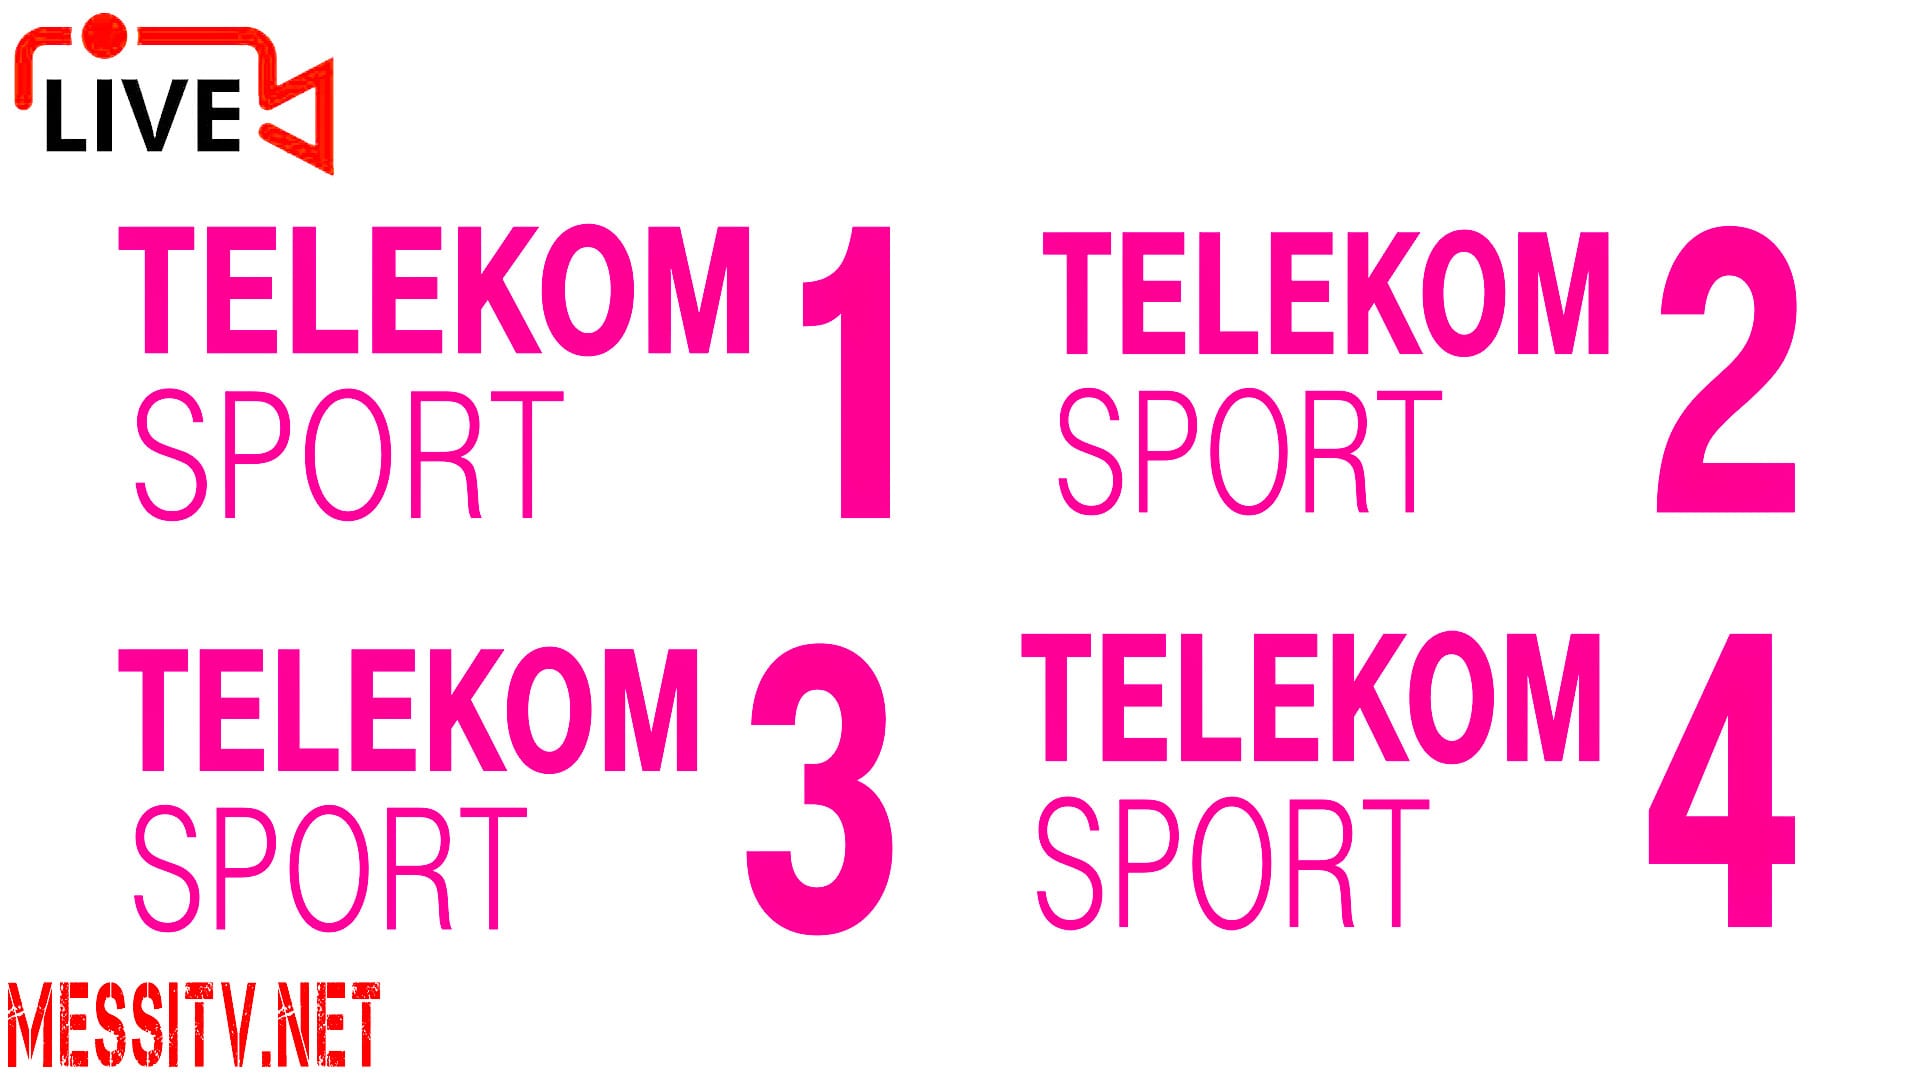 hue Literature crash Tranzacție majoră pe piața media: Telekom România și-a cedat cele 4 posturi  TV de sport către Orange - Ziariștii